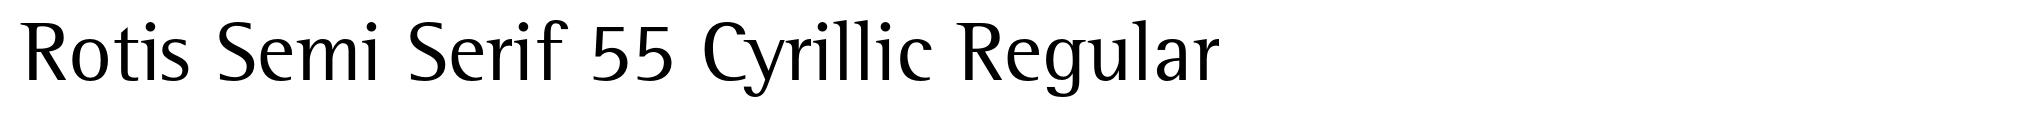 Rotis Semi Serif 55 Cyrillic Regular image